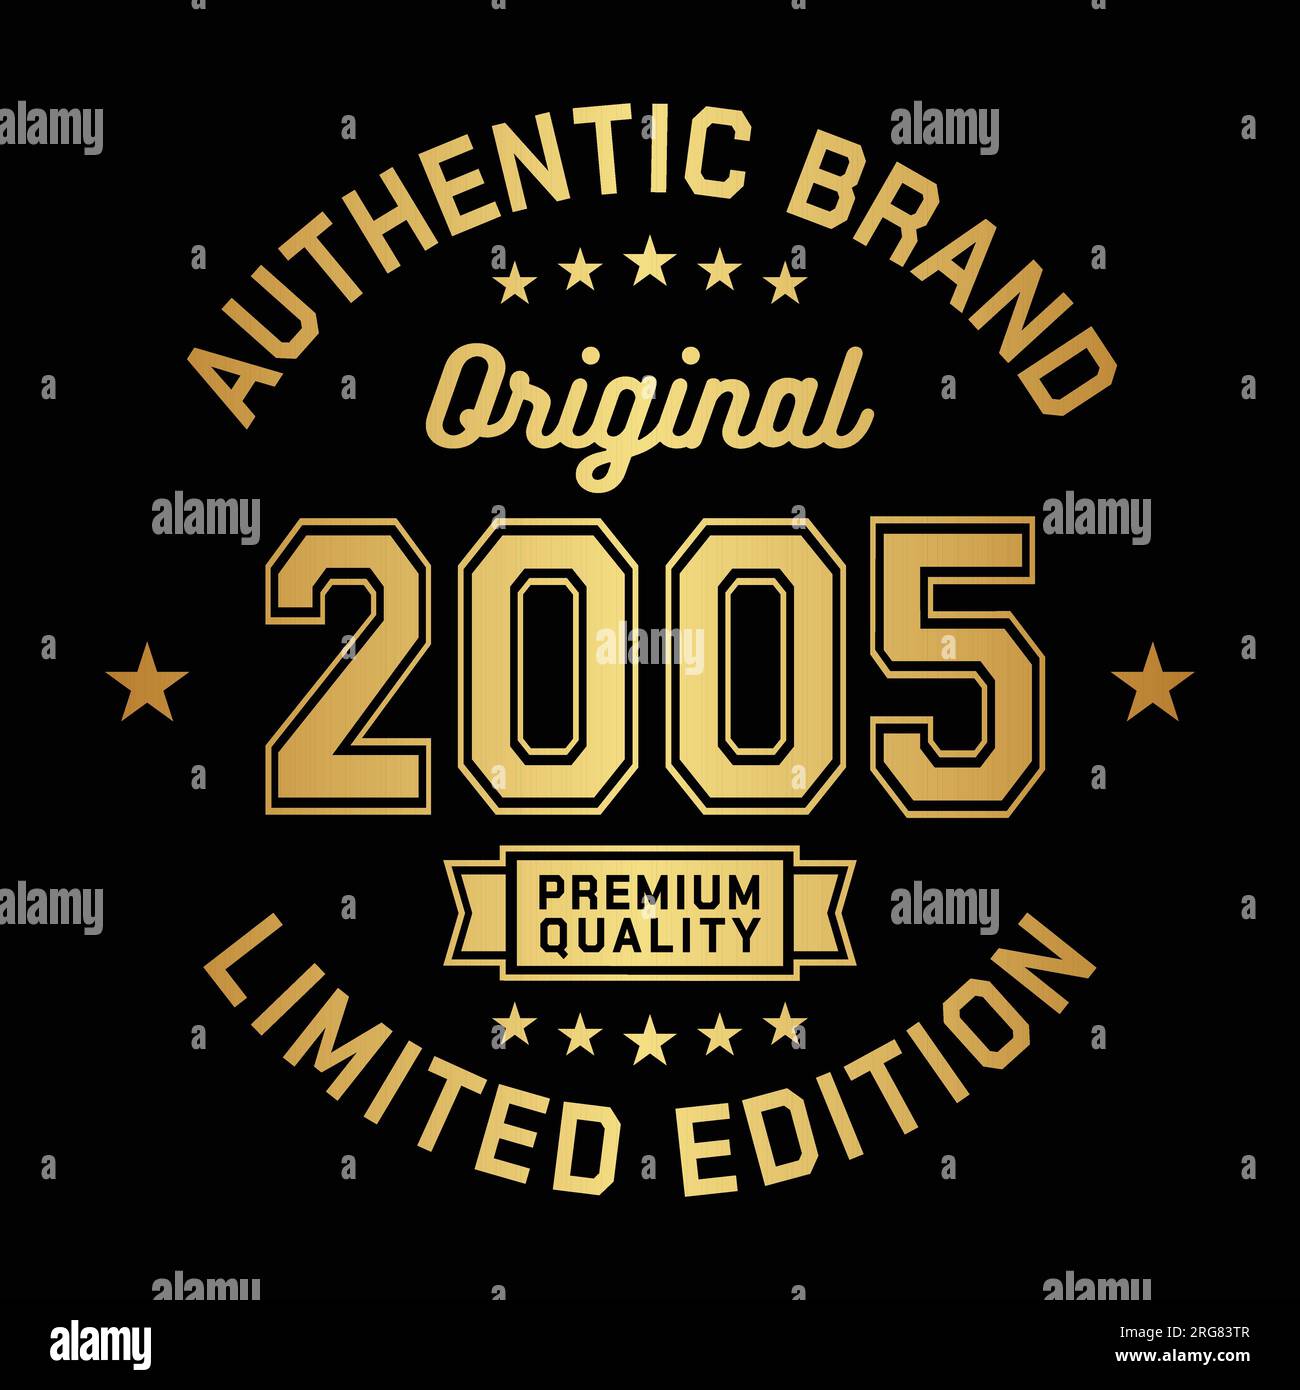 2005 marchio autentico. Abbigliamento e design alla moda. Grafica per t-shirt. Vettore e illustrazione. Illustrazione Vettoriale